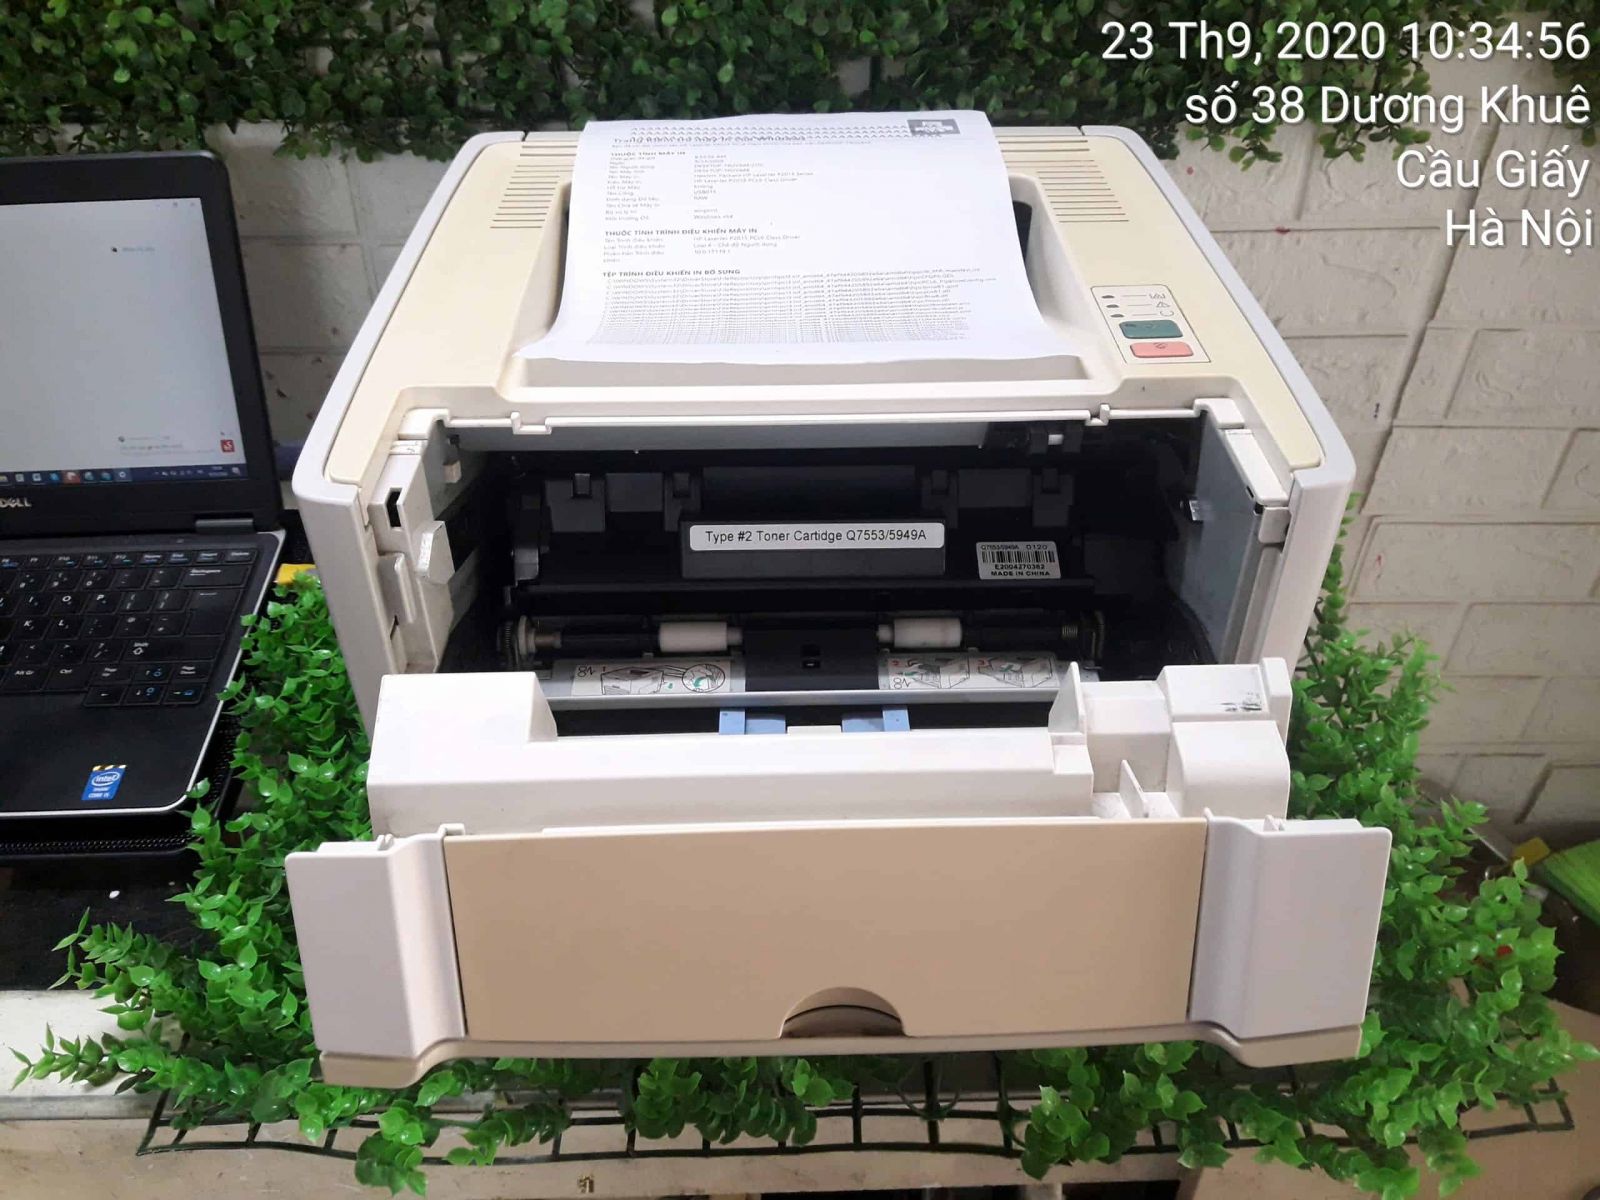 Máy In HP Laserjet 1160 Printer ( kèm hộp mực , dây nguồn , dây usb mới ) - aalo.vn